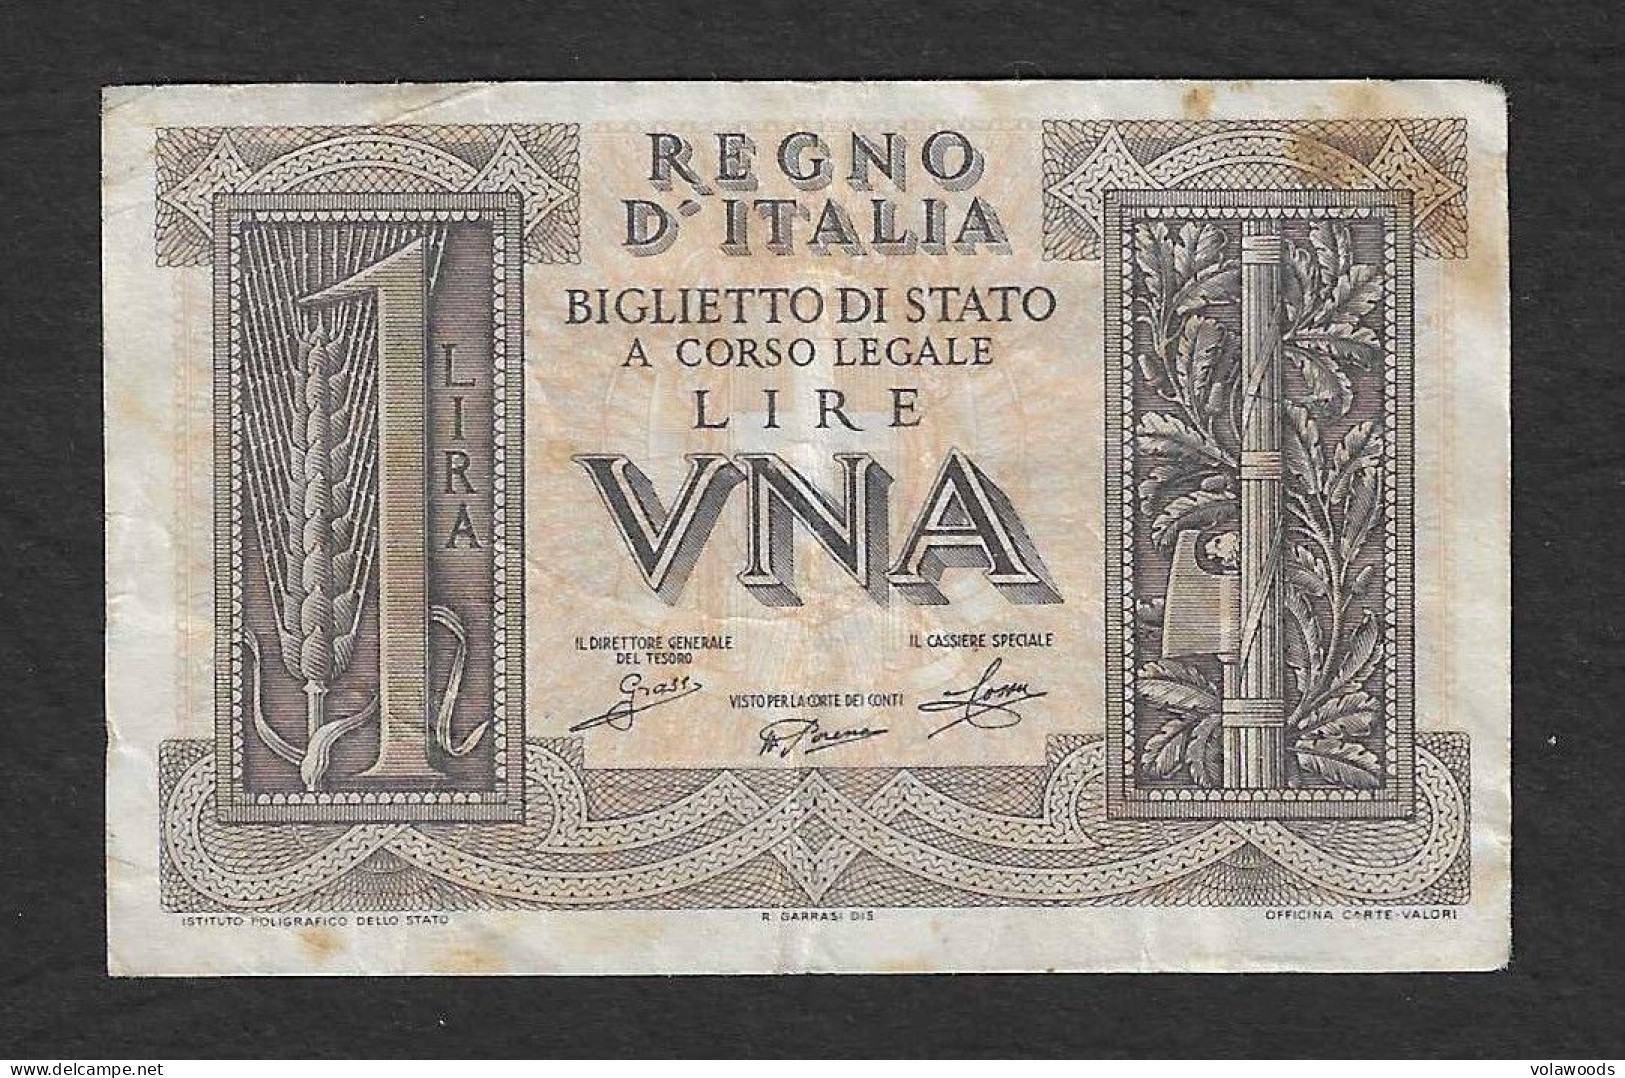 Italia - Banconota Circolata Da 1 Lira "Impero" P-26 - 1939 #17 - Regno D'Italia – 1 Lire